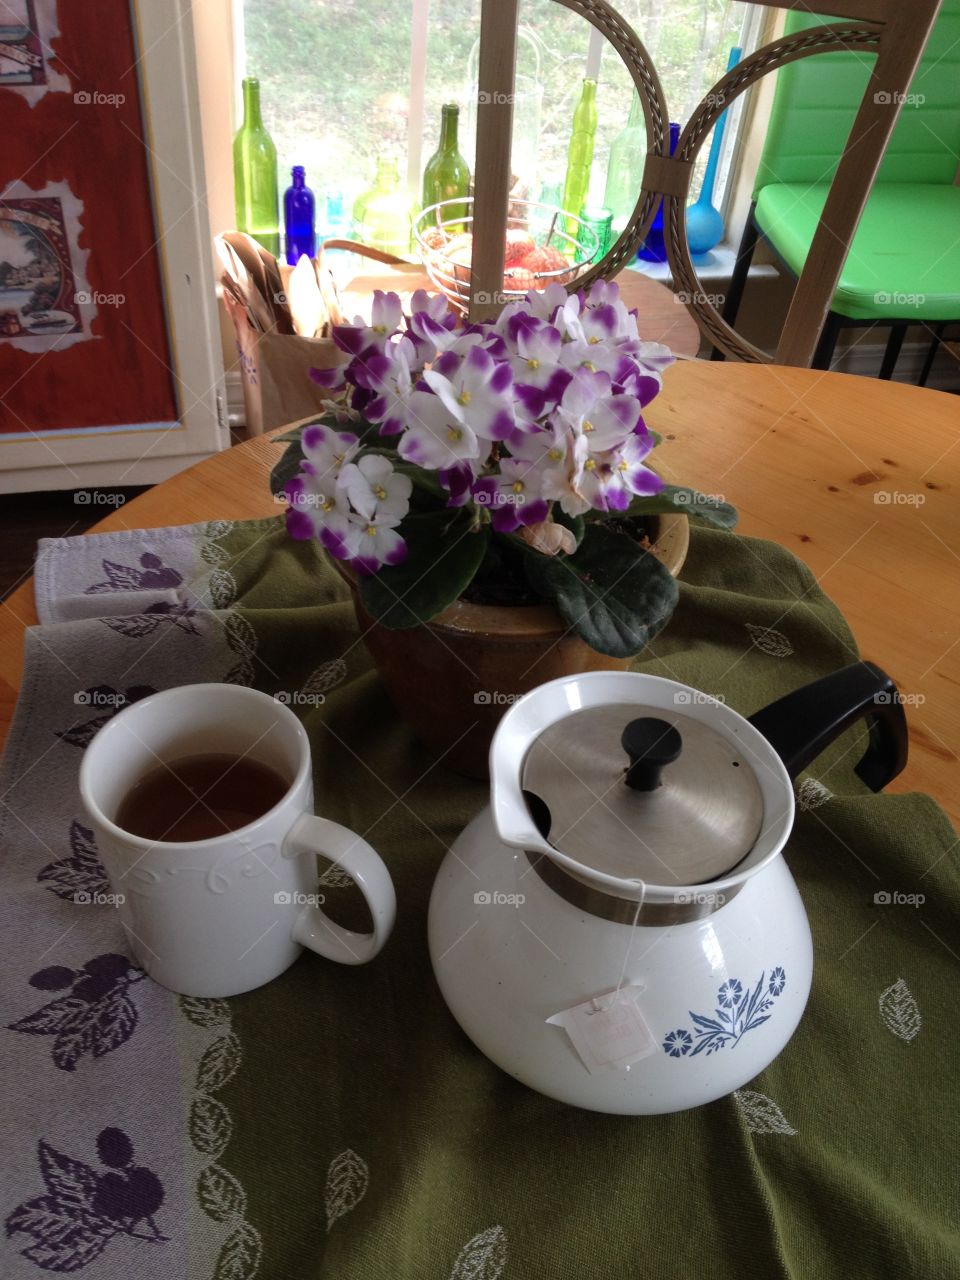 Tea Time At Grandma's